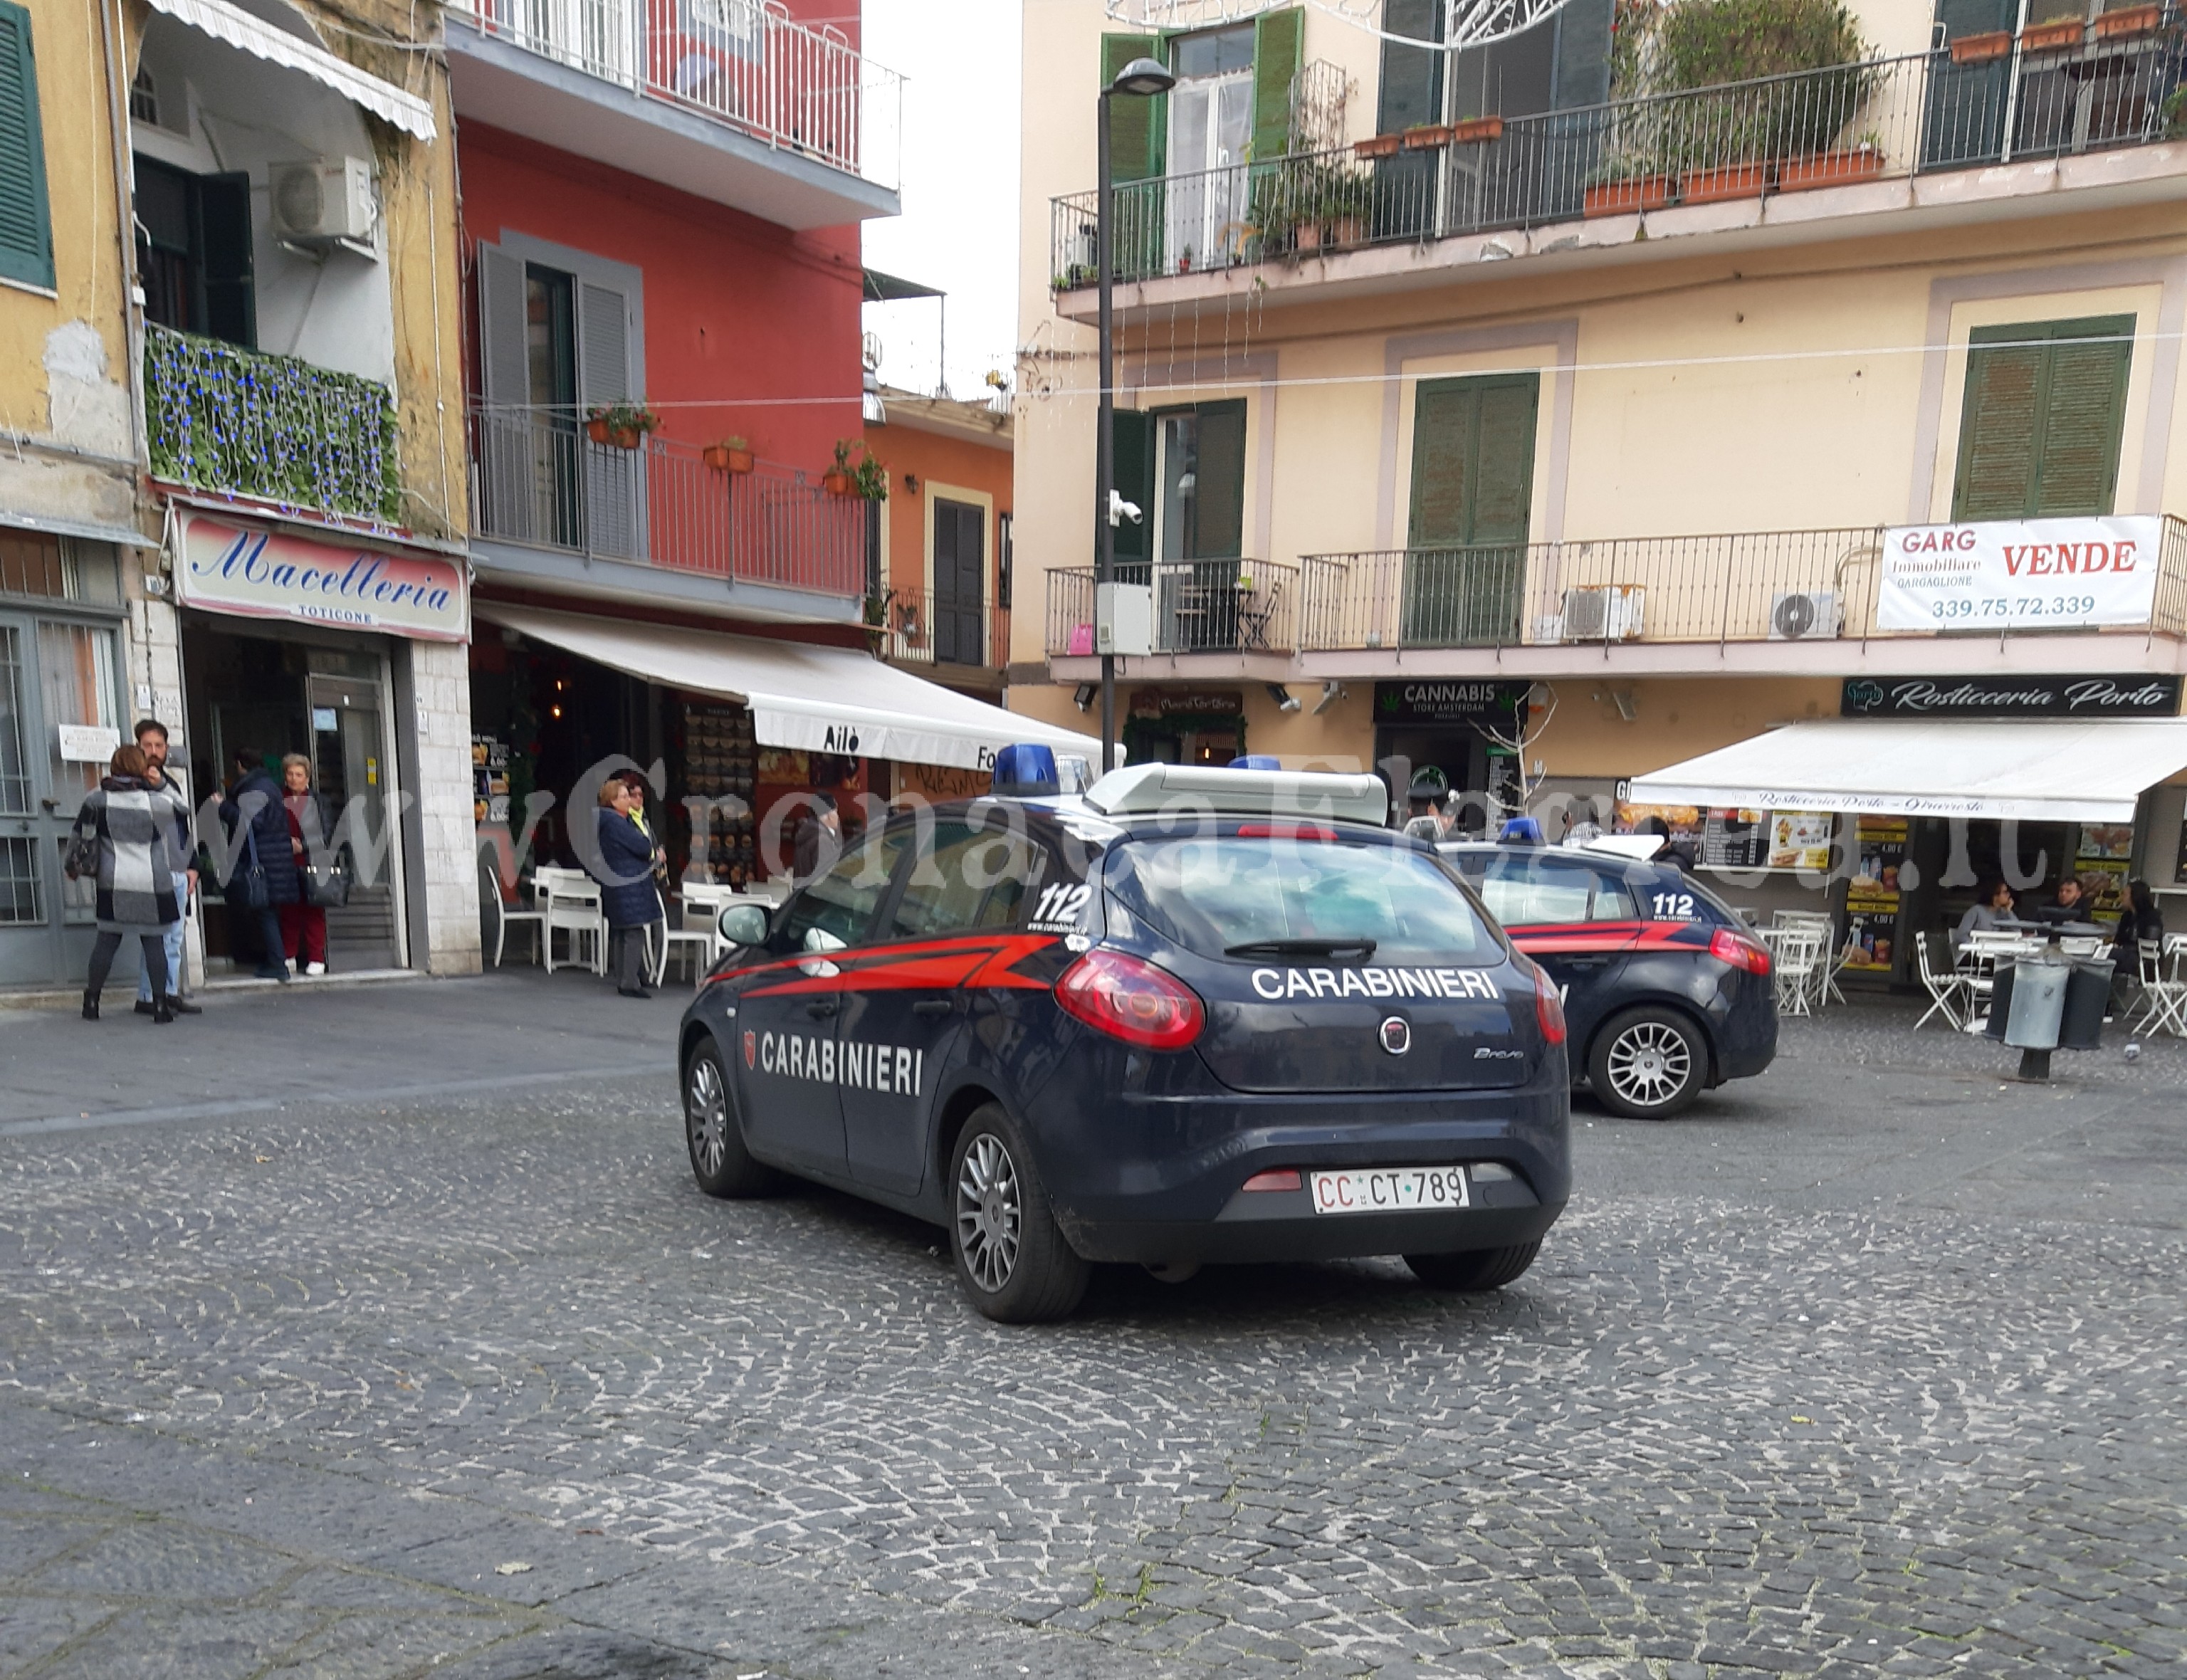 Alto impatto dei carabinieri: 4 arresti a Pozzuoli e Bacoli, in manette ladri e pusher